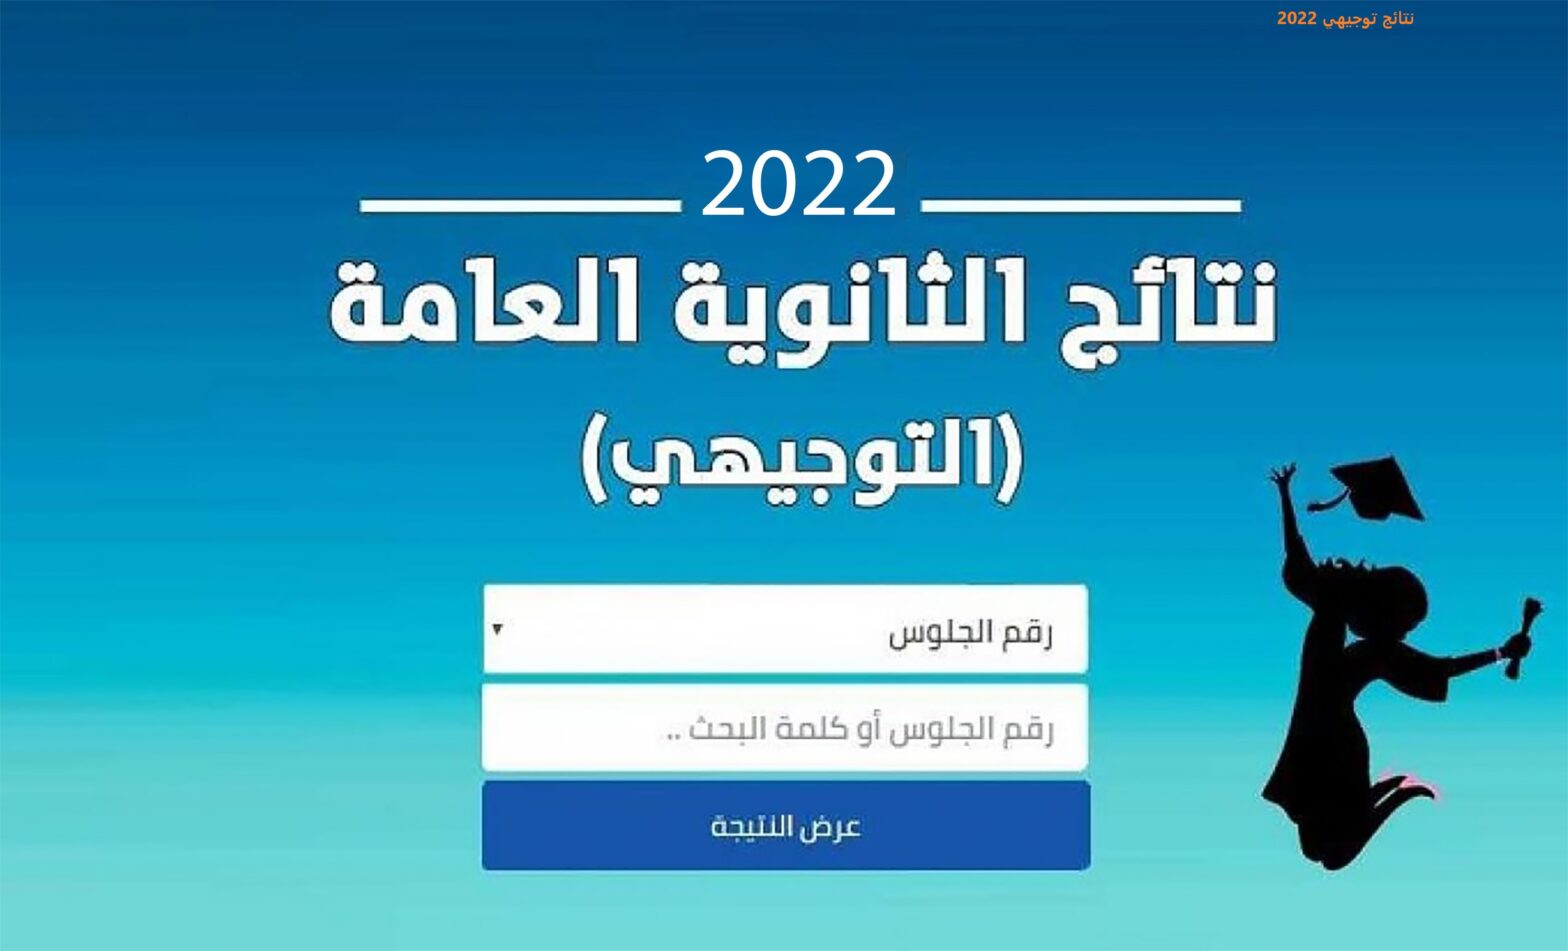 موعد نتائج التوجيهي 2022 الاردن رابط استعلام نتائج الثانوية العامة وزارة التربية والتعليم الأردنية